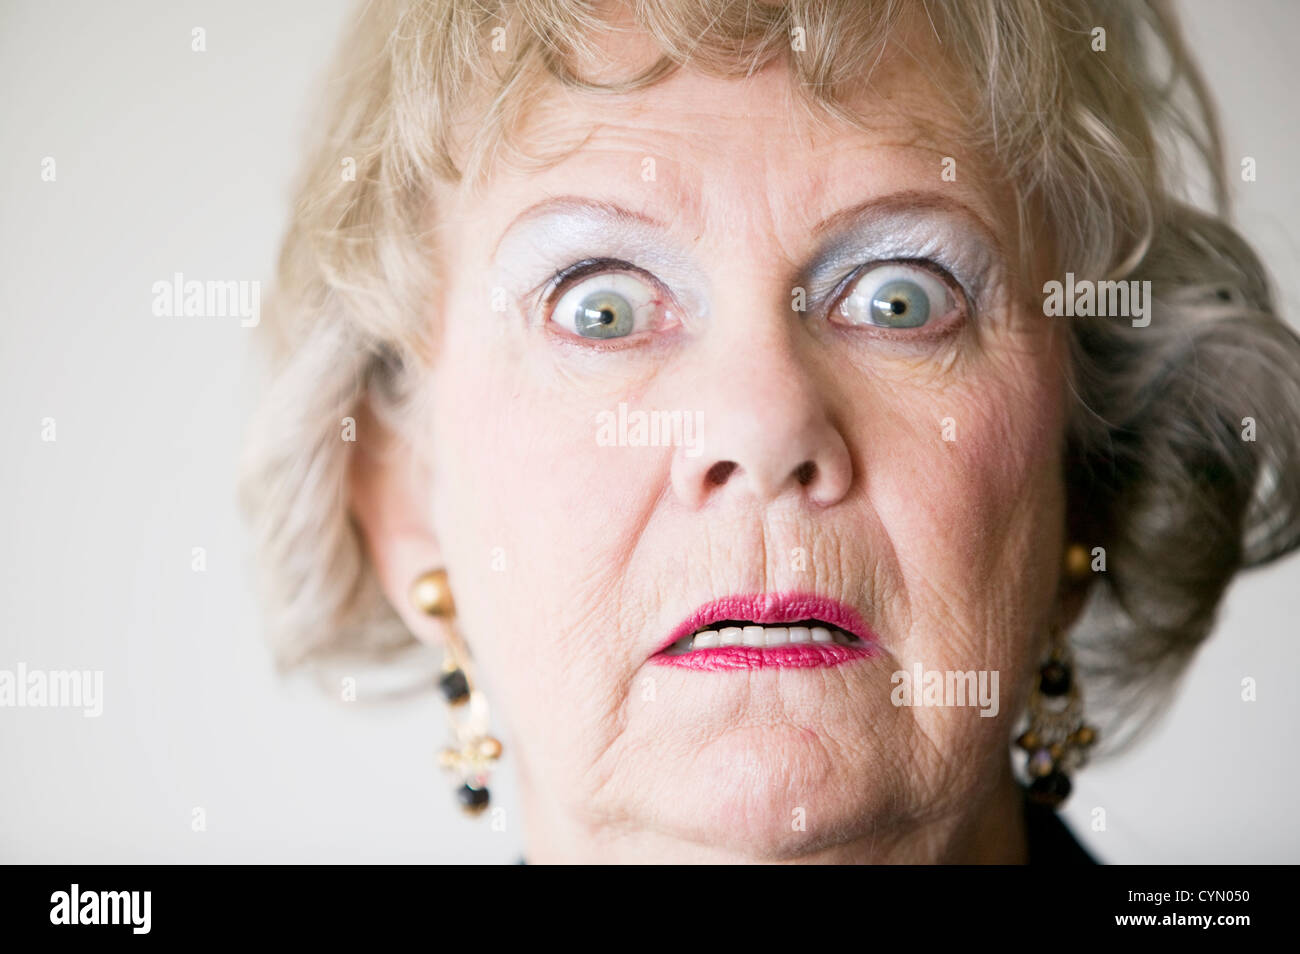 Eine ältere Frau Mit Einem Entsetzten Blick Auf Ihrem Gesicht In Nahaufnahme Stockfotografie Alamy